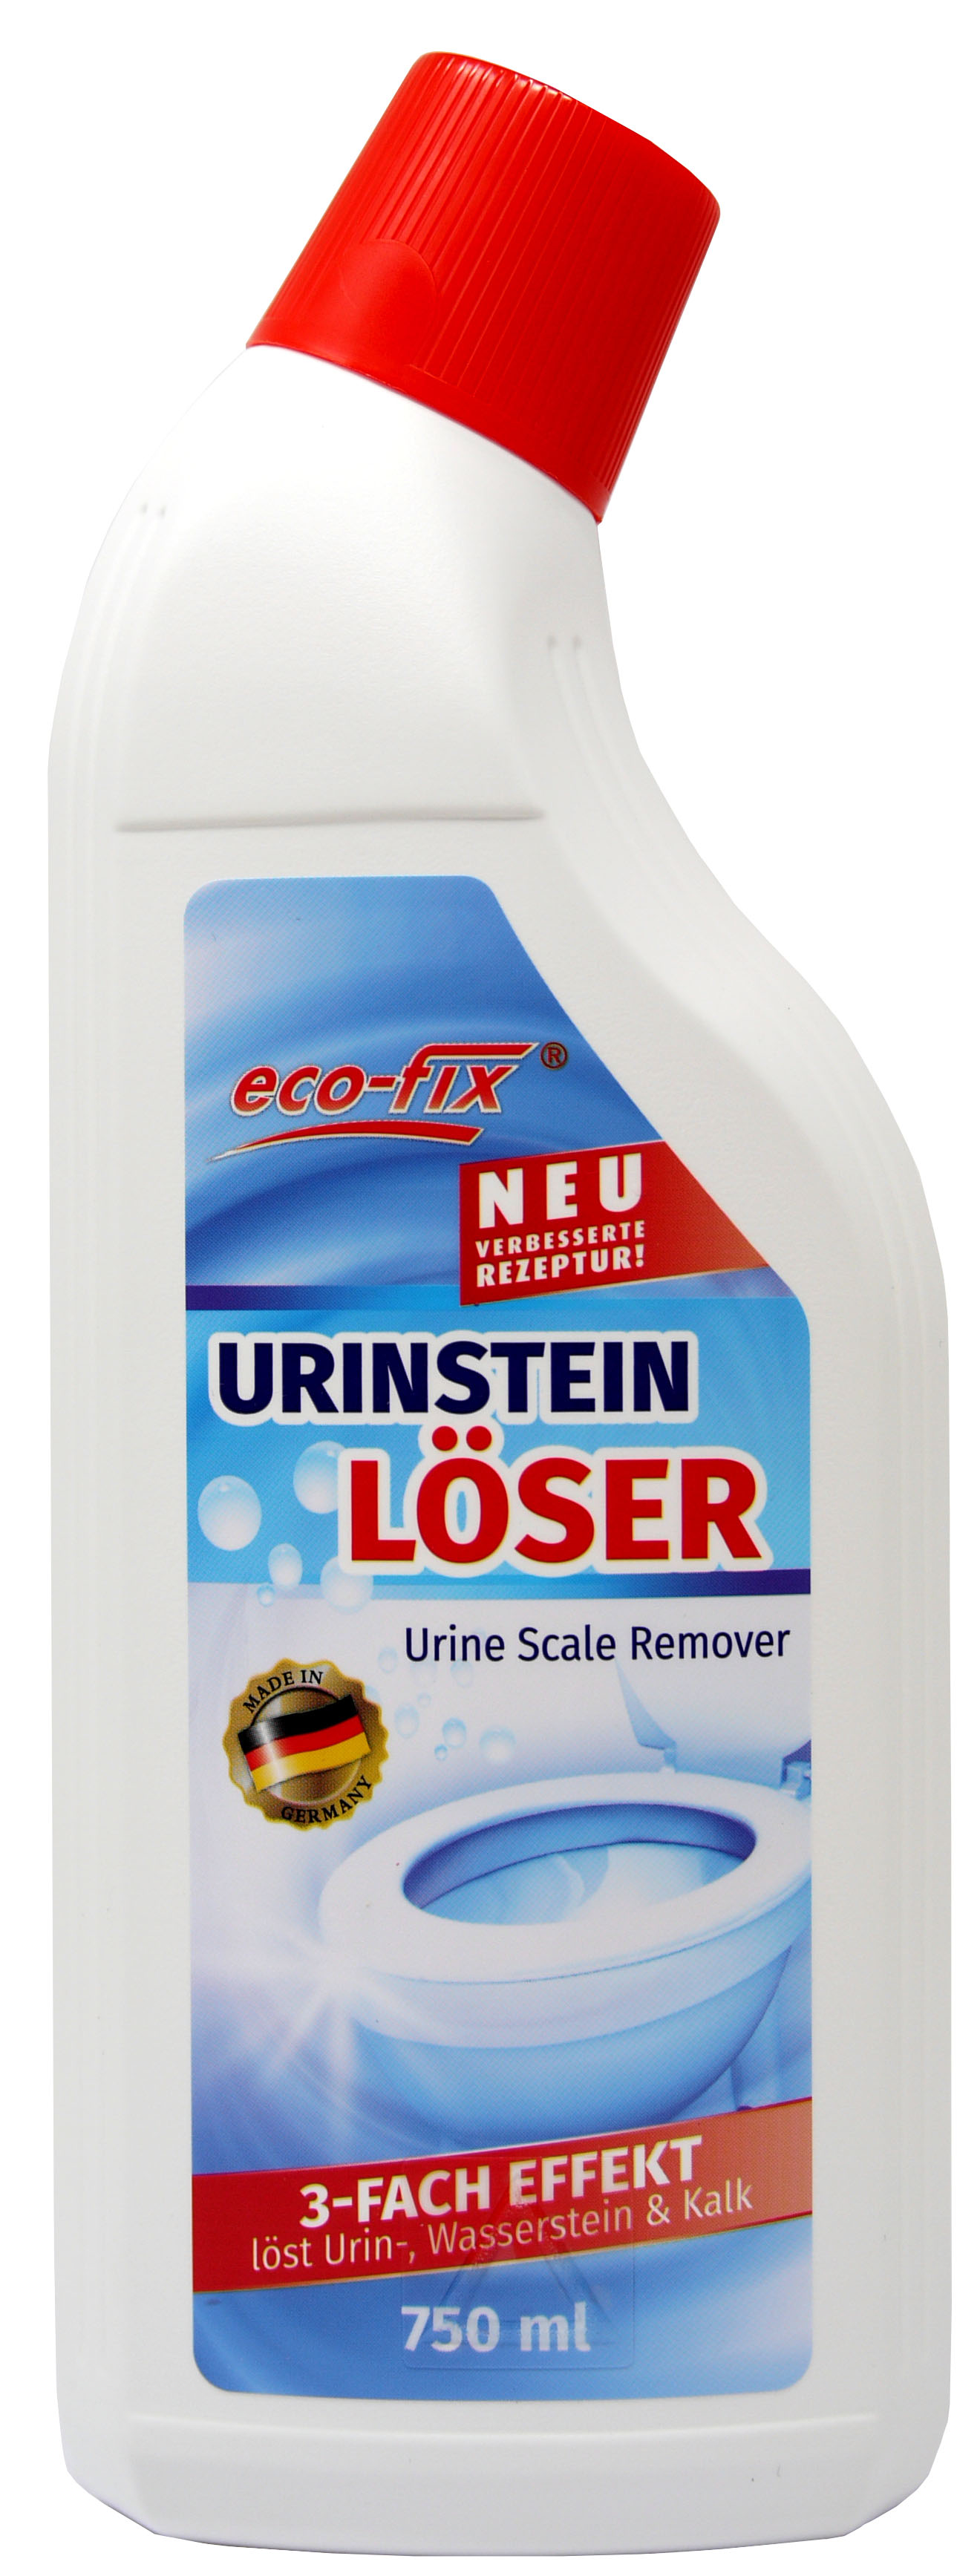 02450 - urine scale remover 750 ml